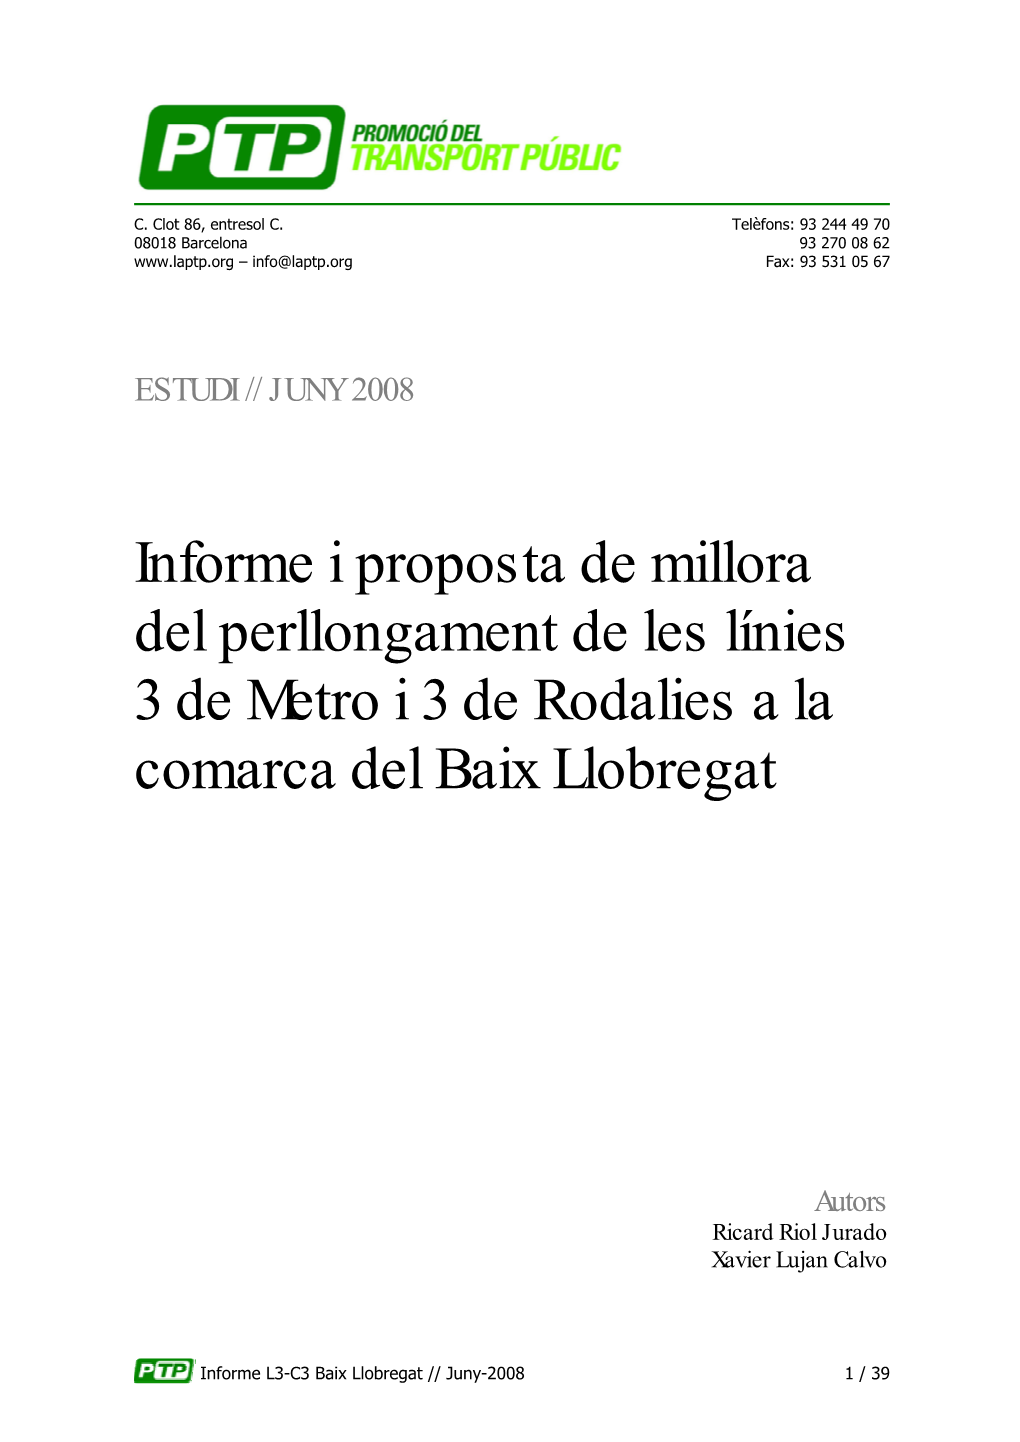 Informe I Proposta De Millora Del Perllongament De Les Línies 3 De Metro I 3 De Rodalies a La Comarca Del Baix Llobregat